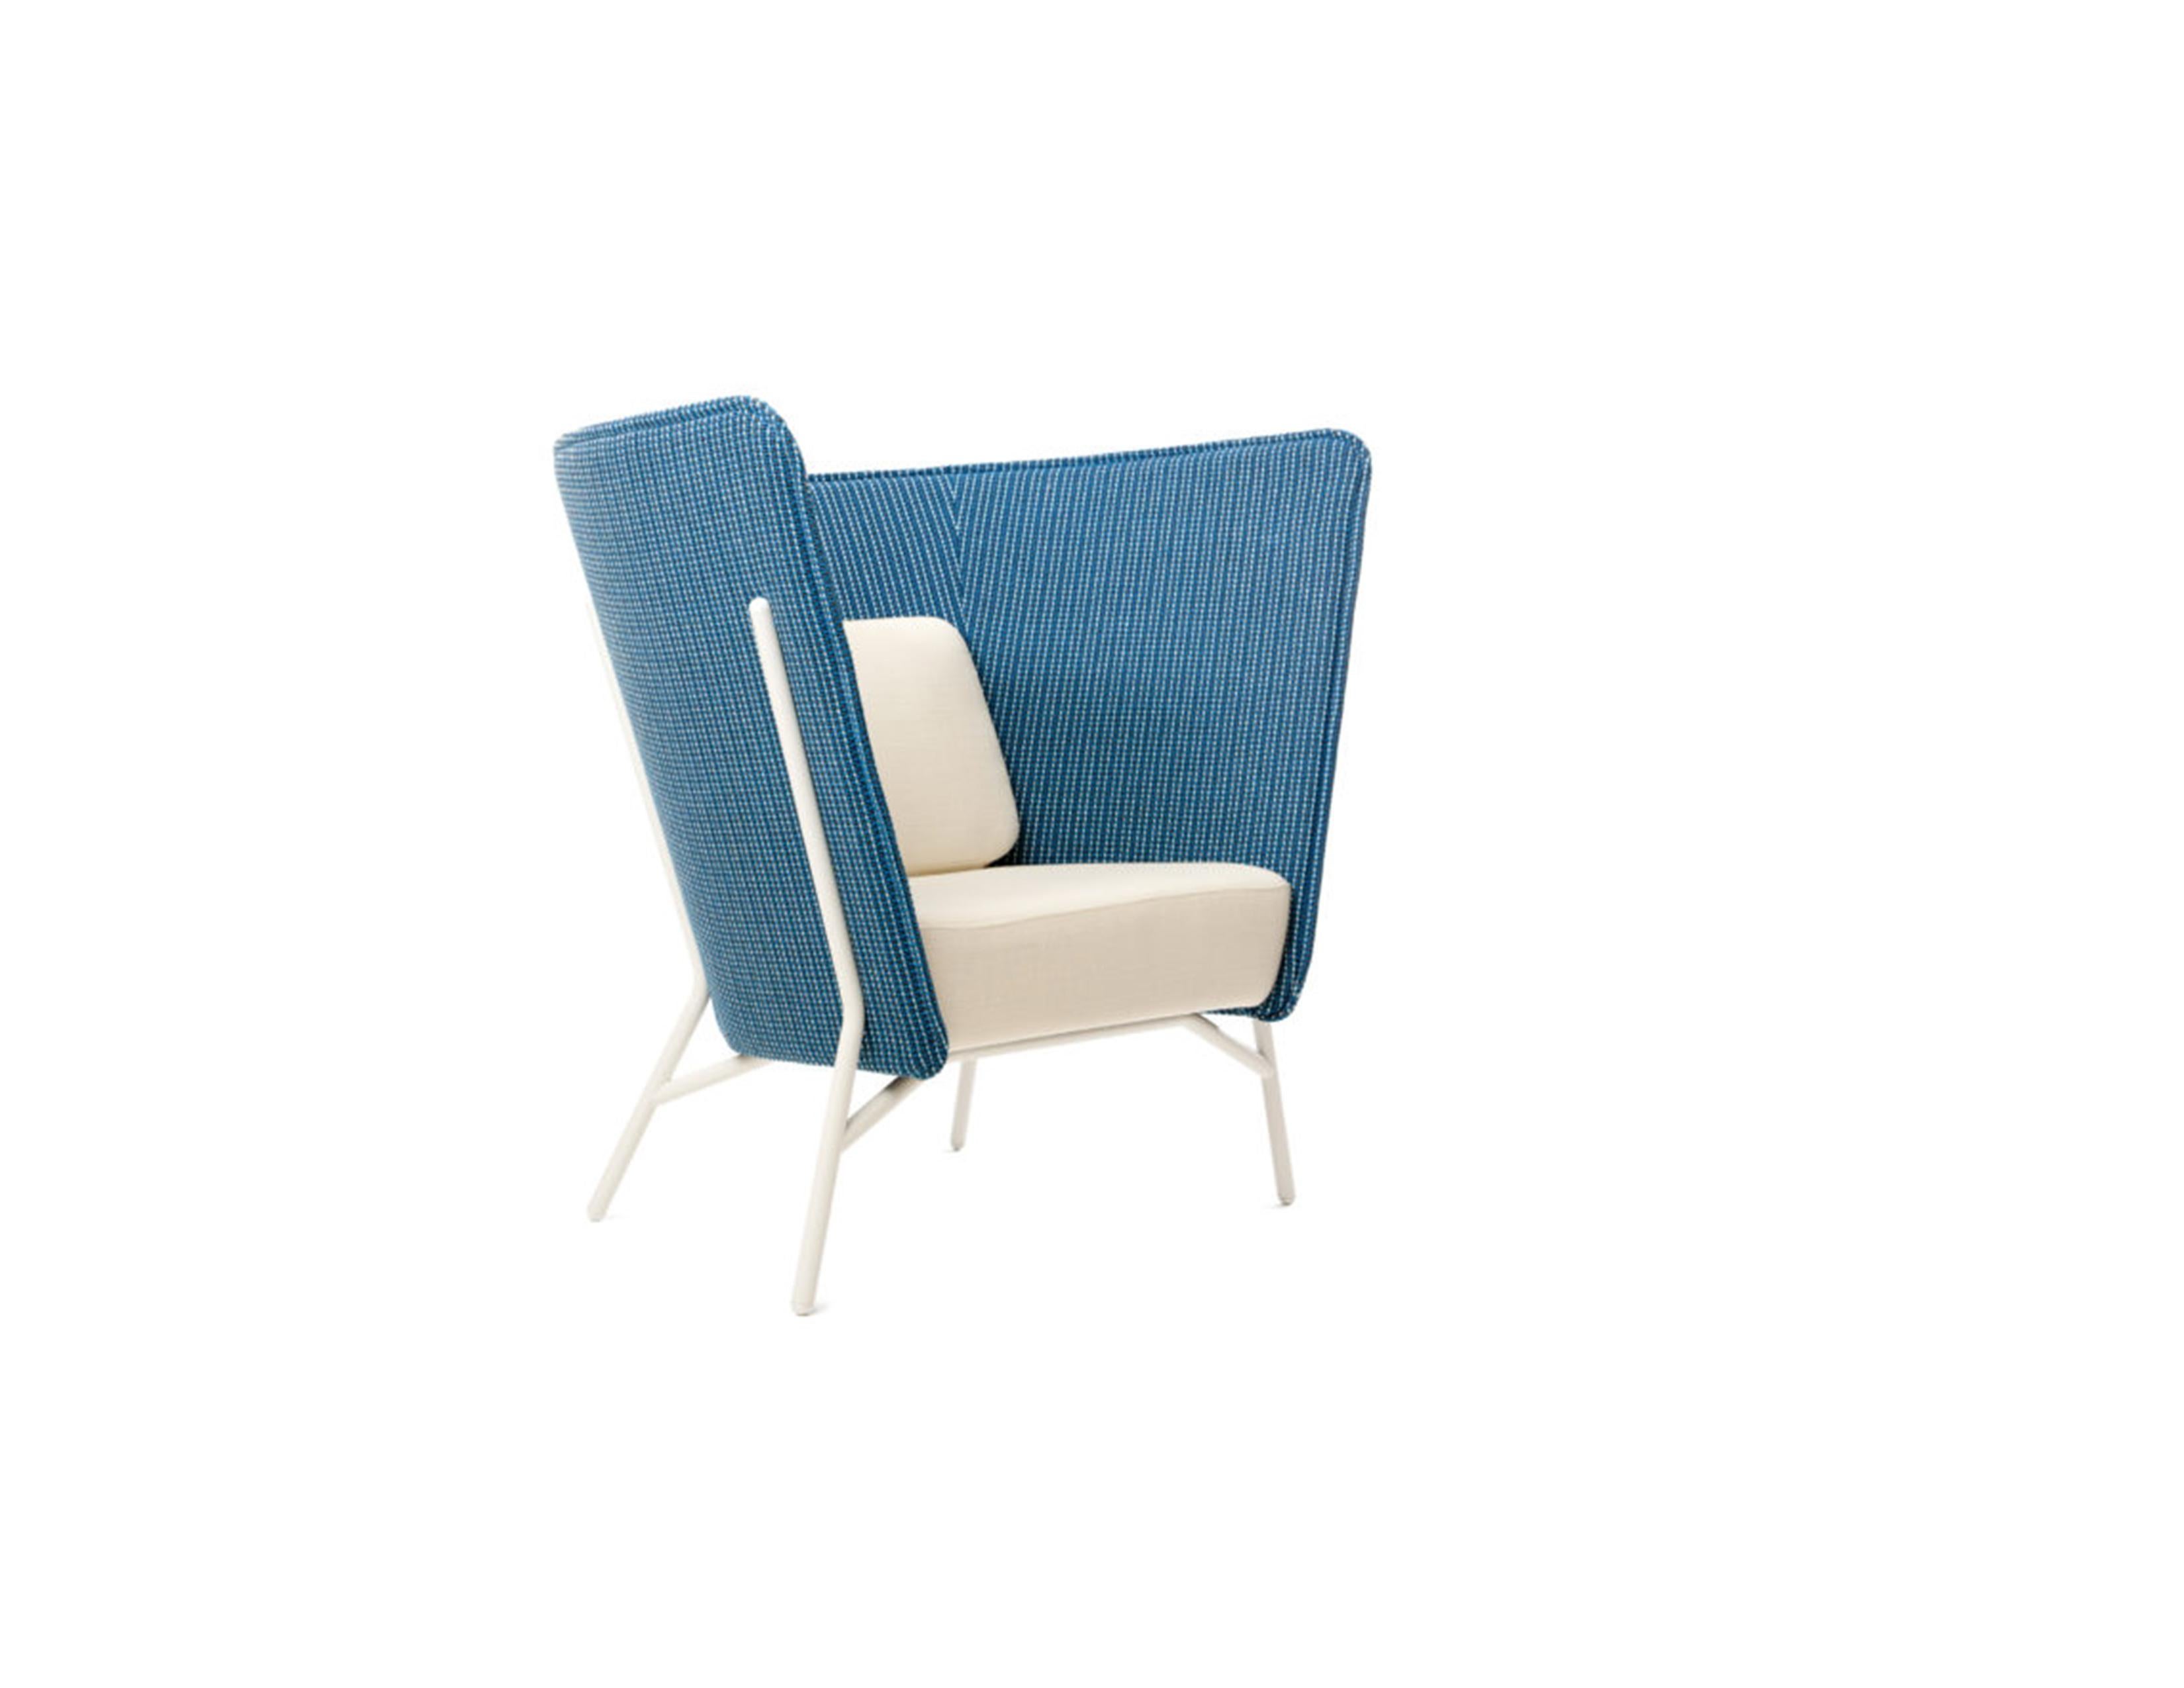 La chaise Aura L se définit par son dossier haut et protecteur qui crée une niche isolée même dans les environnements les plus chargés. La forme sculpturale élevée de la chaise longue est un élément architectural frappant, mais elle offre également